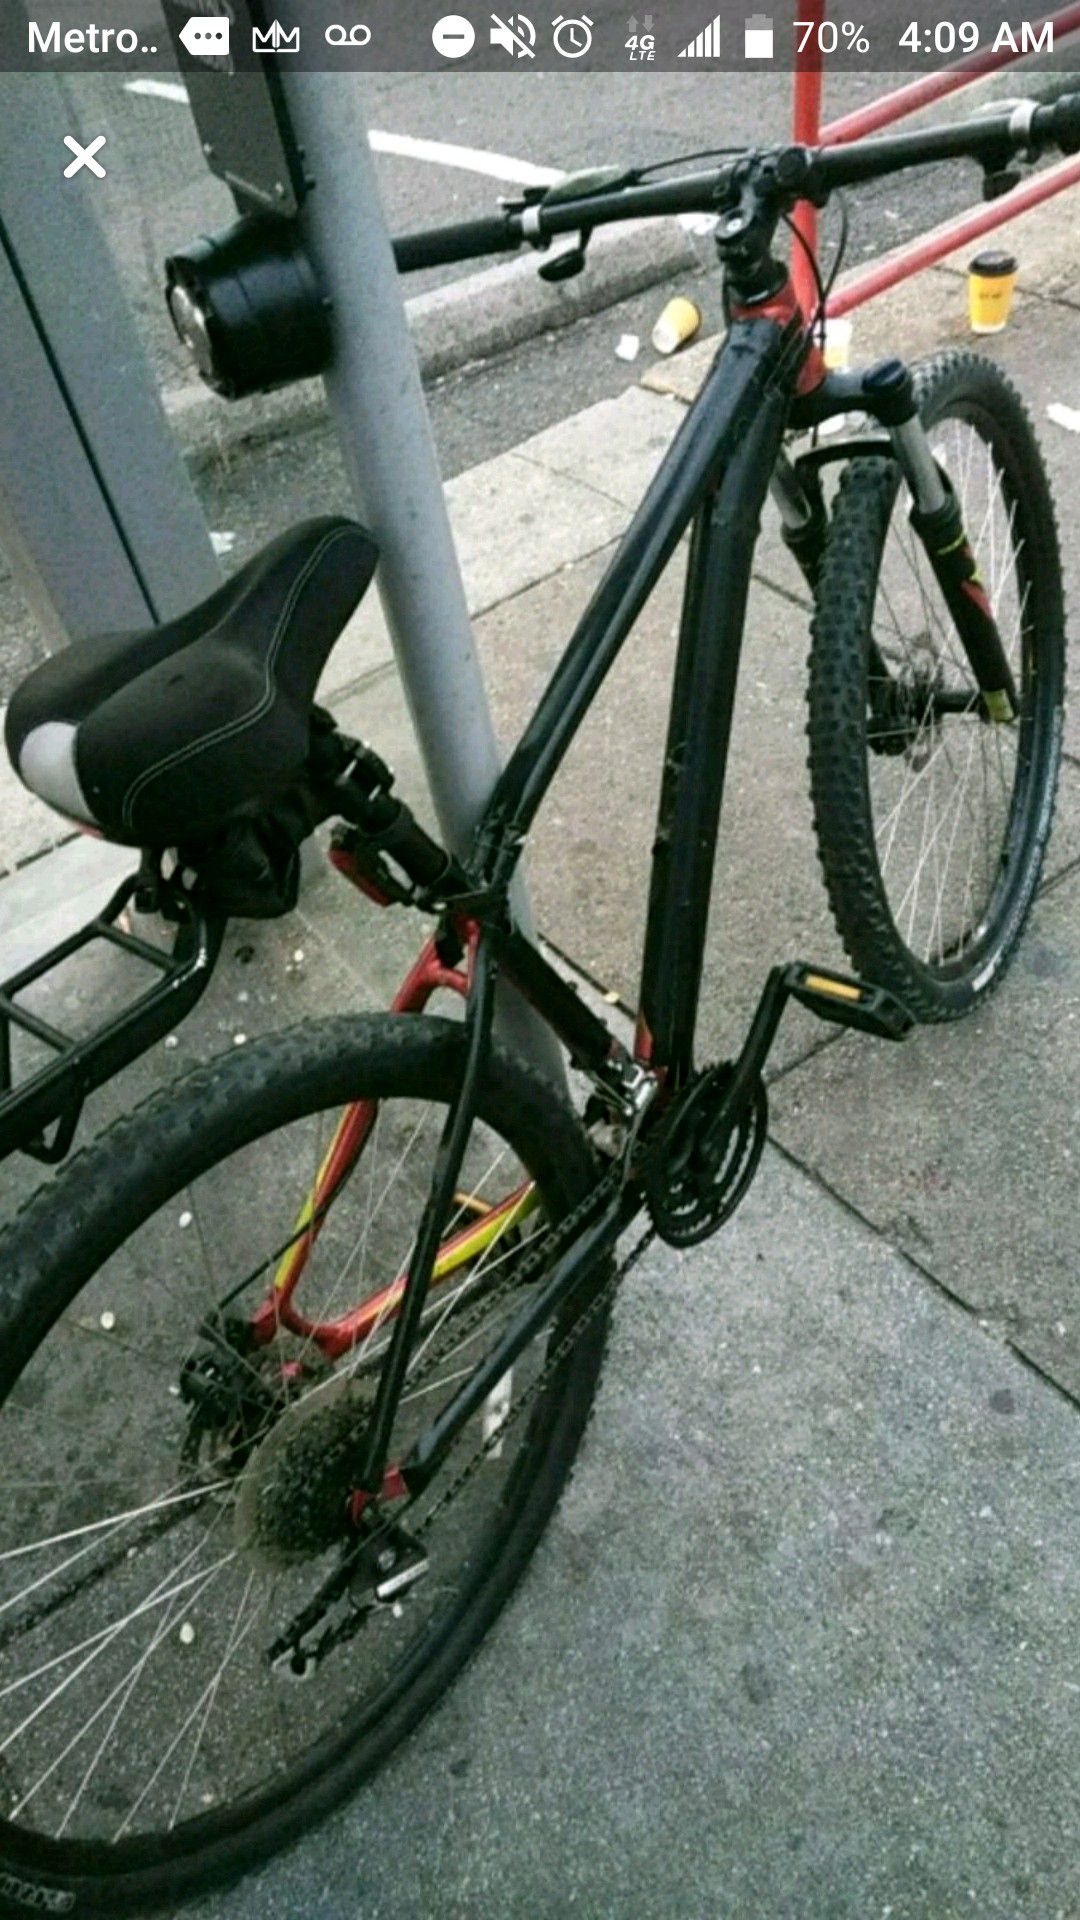 Specialize bike